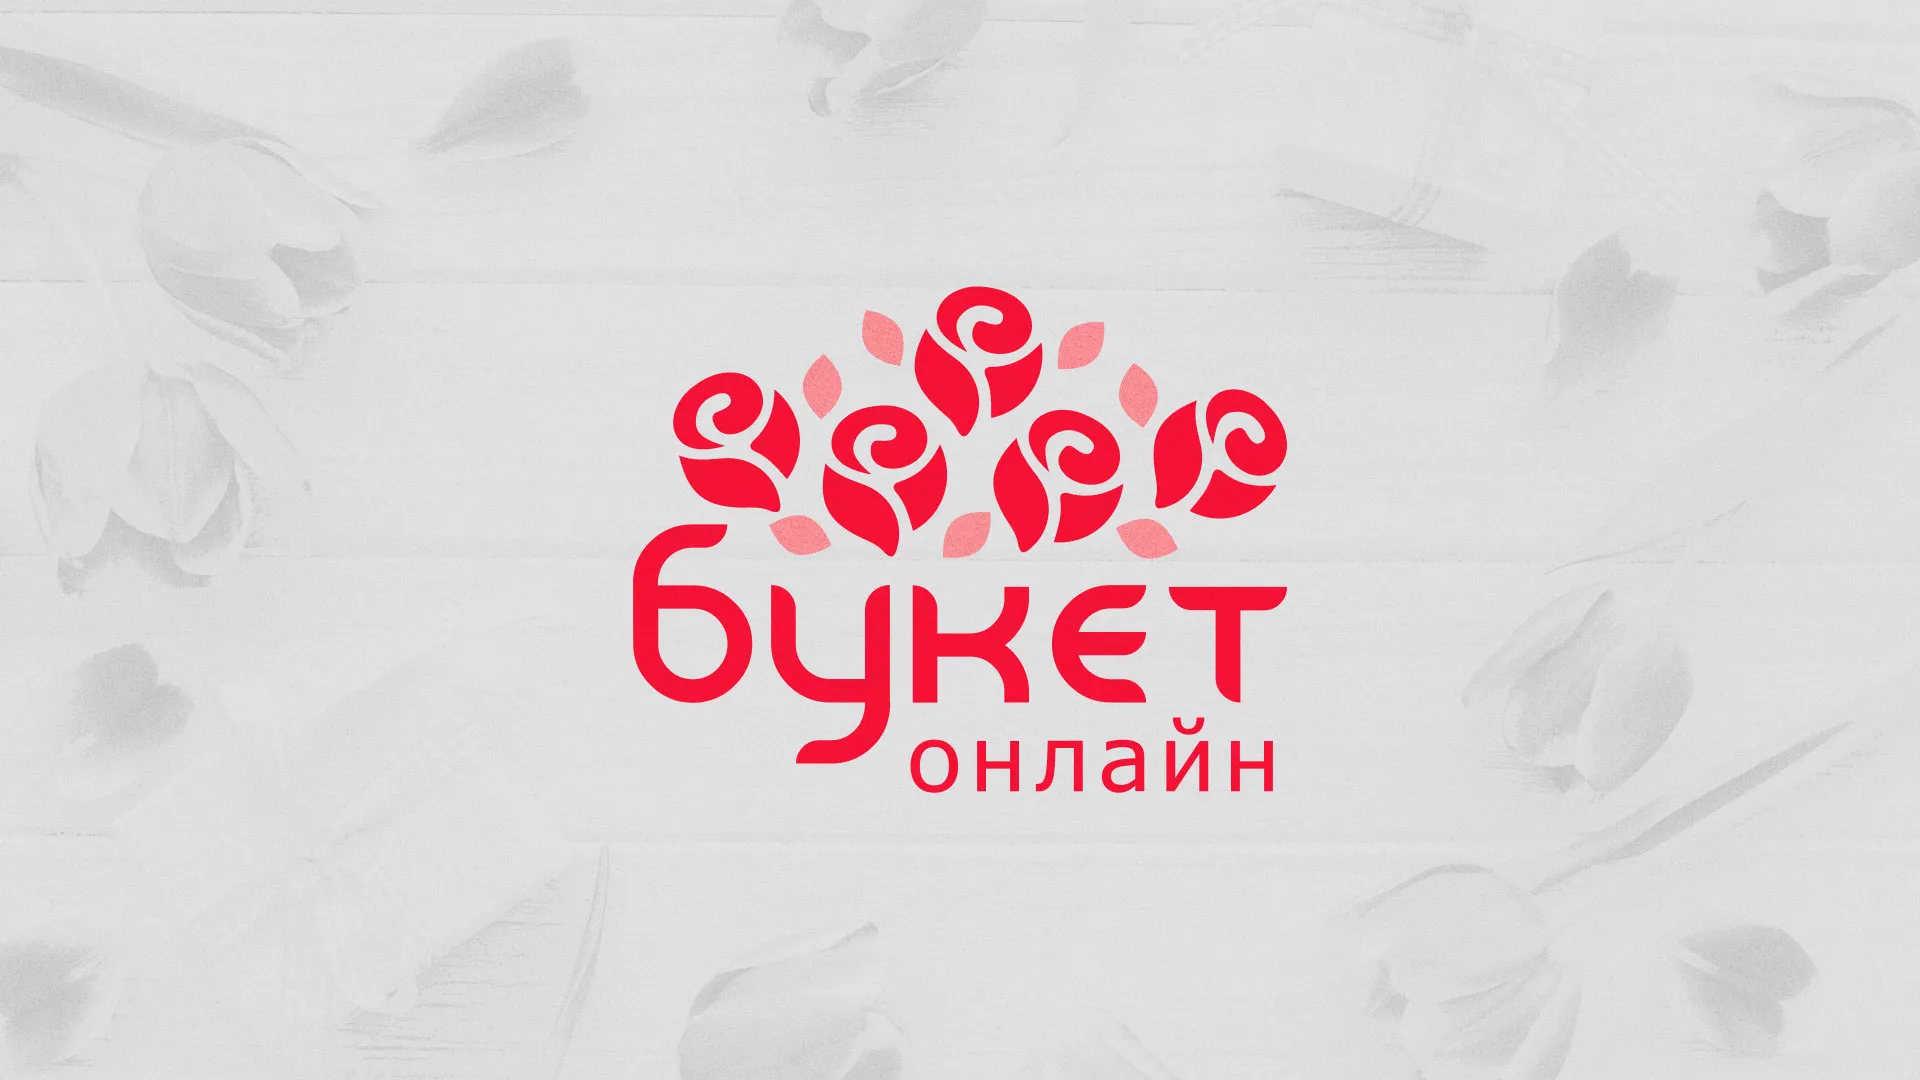 Создание интернет-магазина «Букет-онлайн» по цветам в Рузаевке